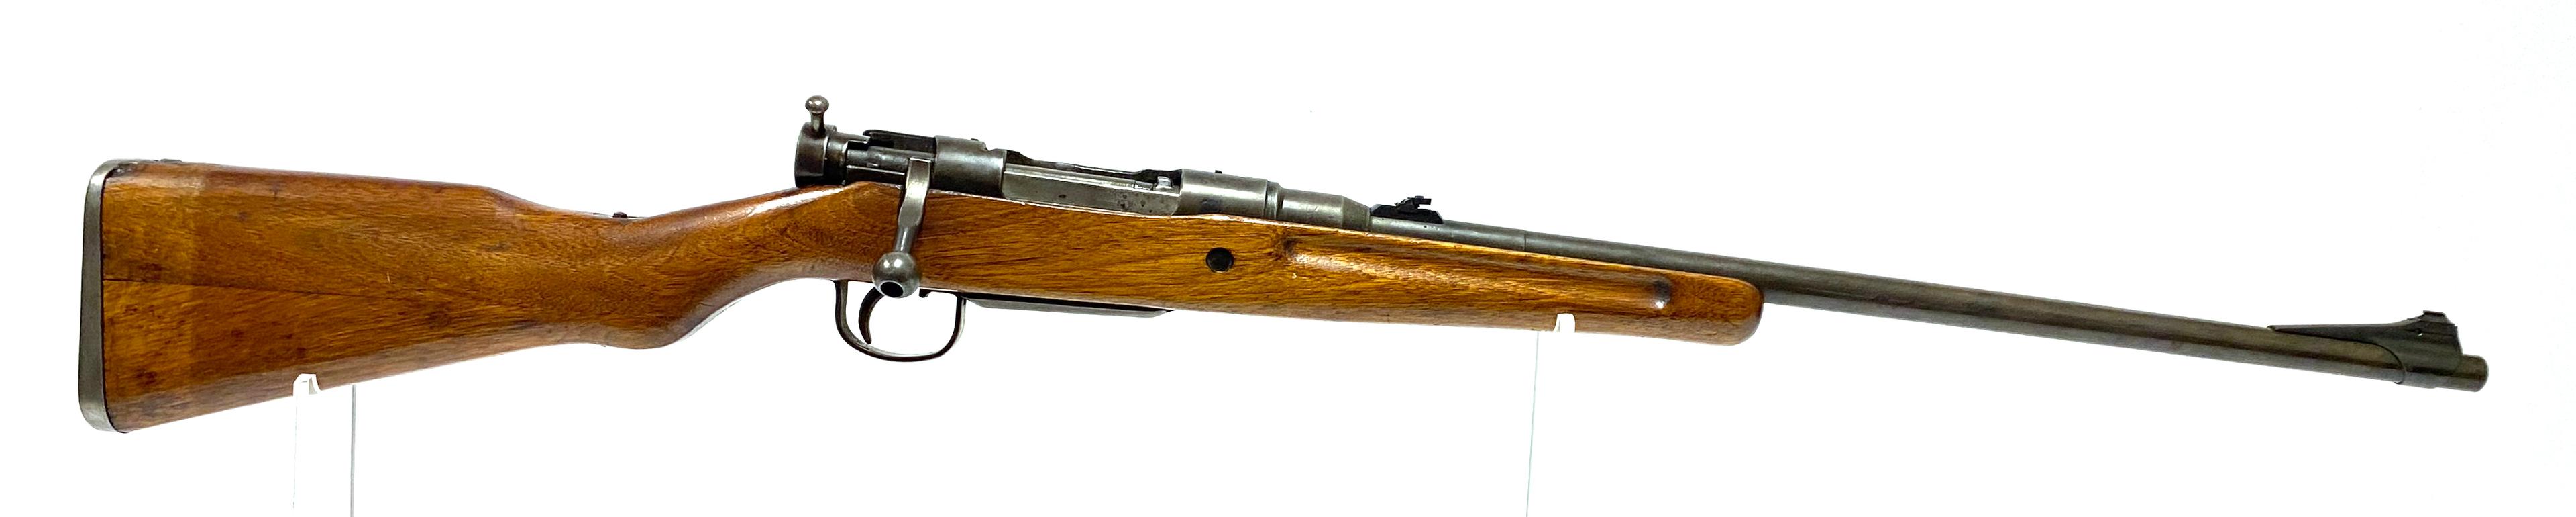 WWII Jinsen Arsenal (Korea) Japanese Arisaka Type 99 Sporter Rifle